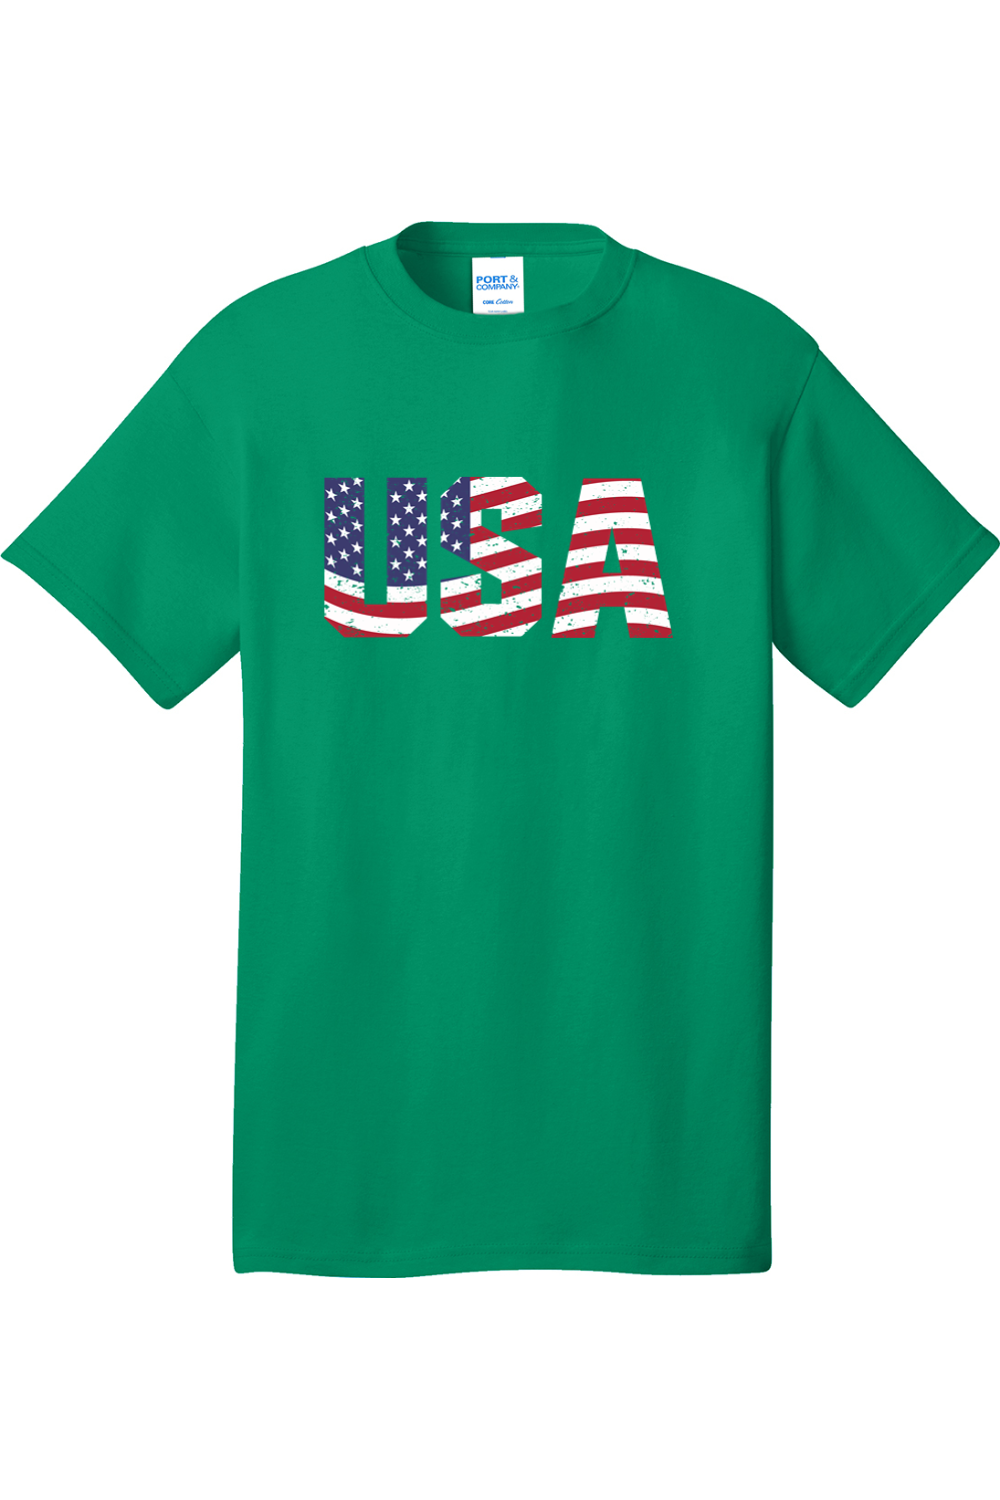 USA | Mens Big and Tall Short Sleeve T-Shirt